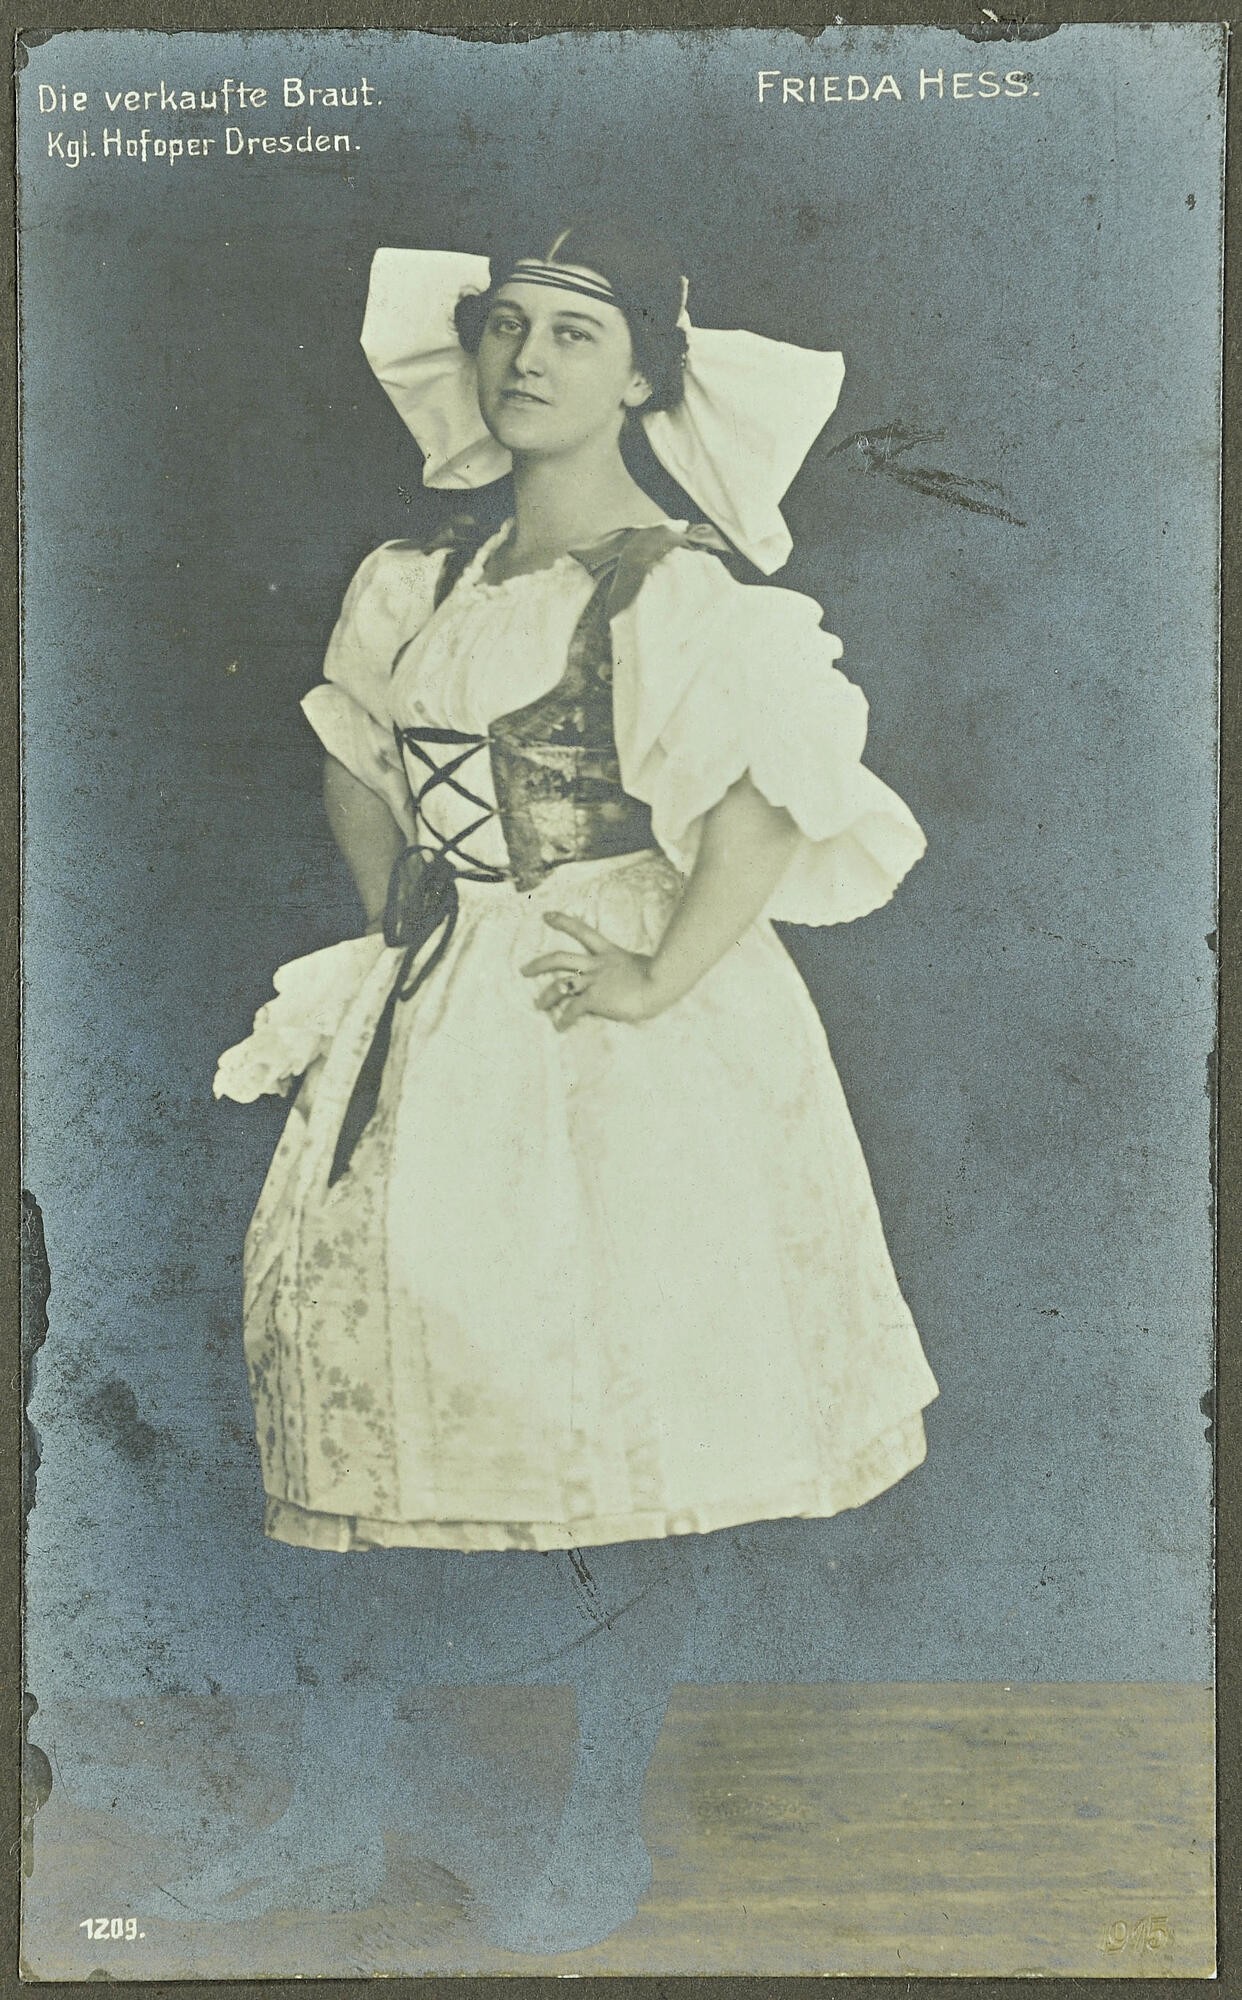 Tafel 676, Bild 3, Frieda Hess [Heß] in "Die verkaufte Braut" (Stadtmuseum Dresden CC BY-NC-ND)